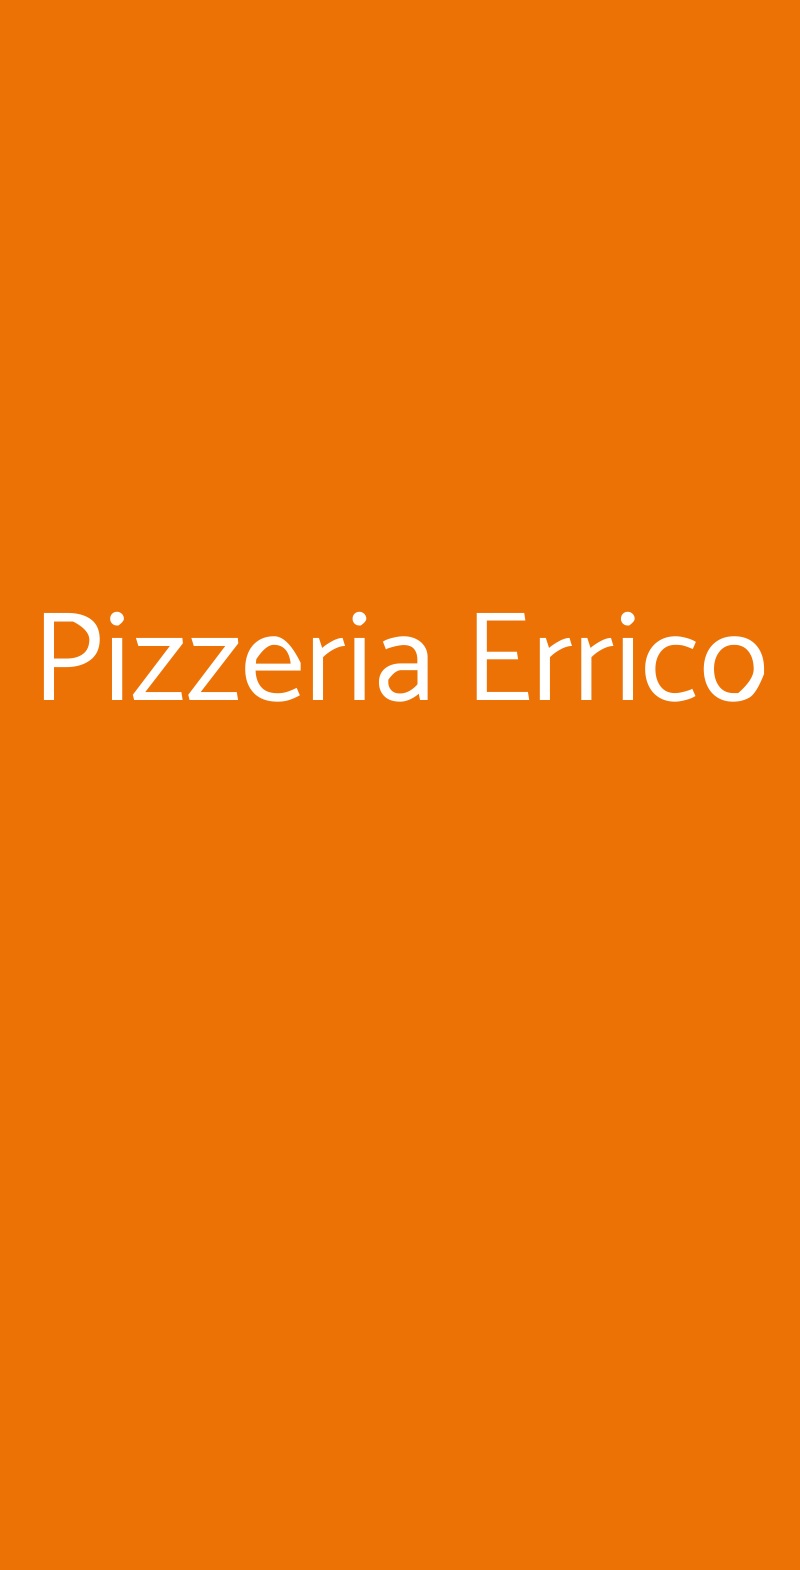 Pizzeria Errico Napoli menù 1 pagina